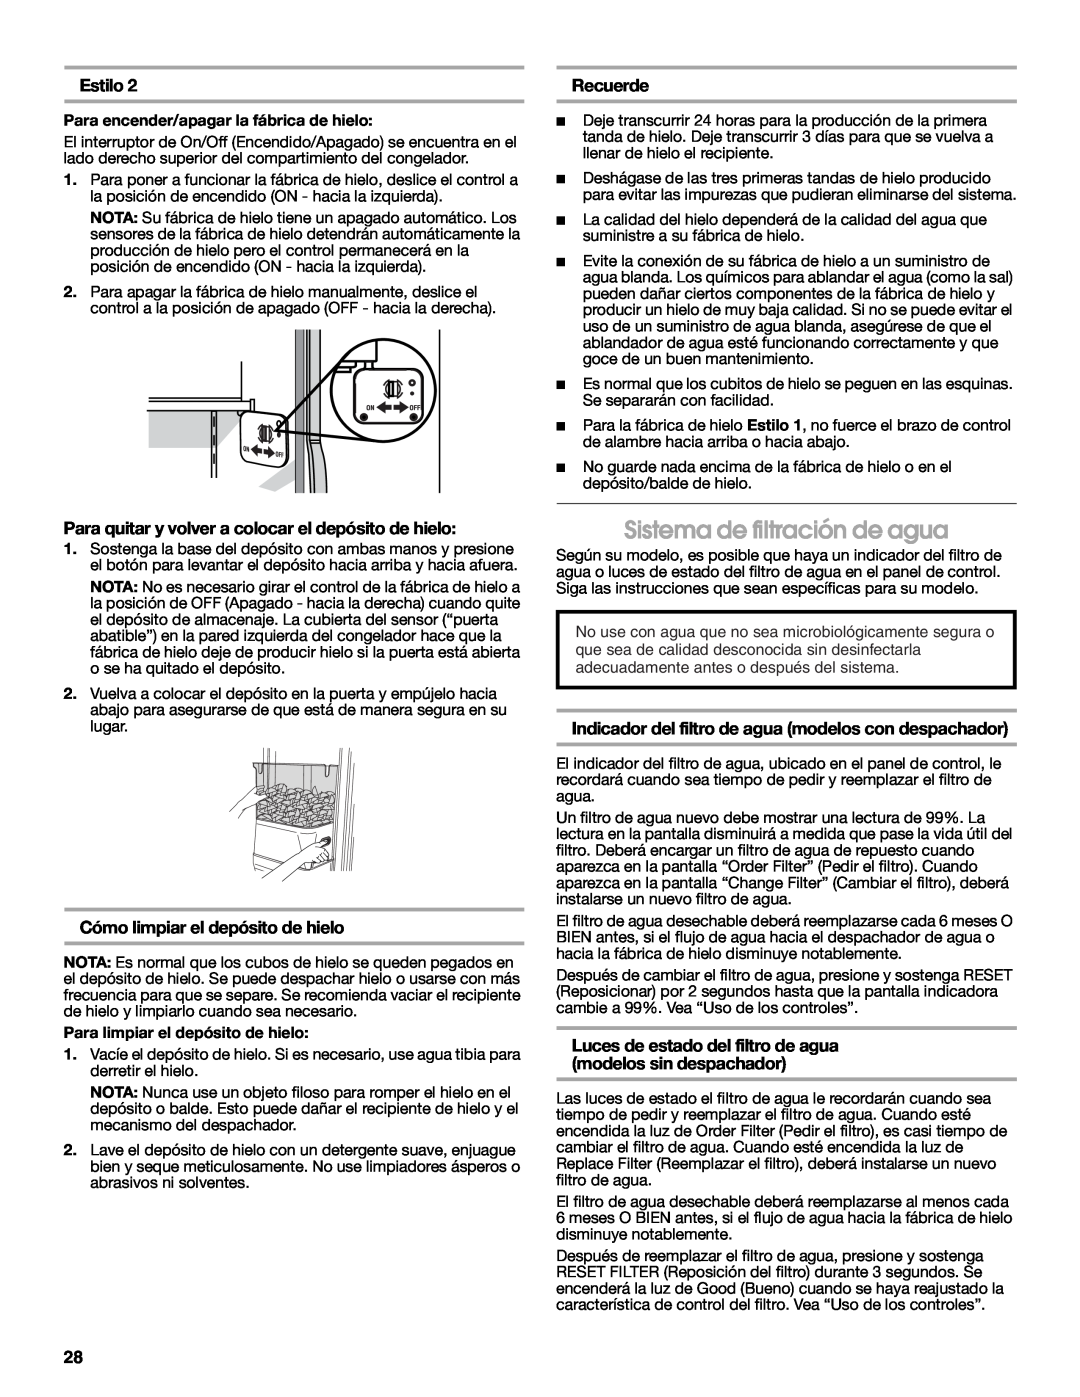 Jenn-Air W10303988A manual Sistema de filtración de agua, Estilo, Recuerde, Cómo limpiar el depósito de hielo 